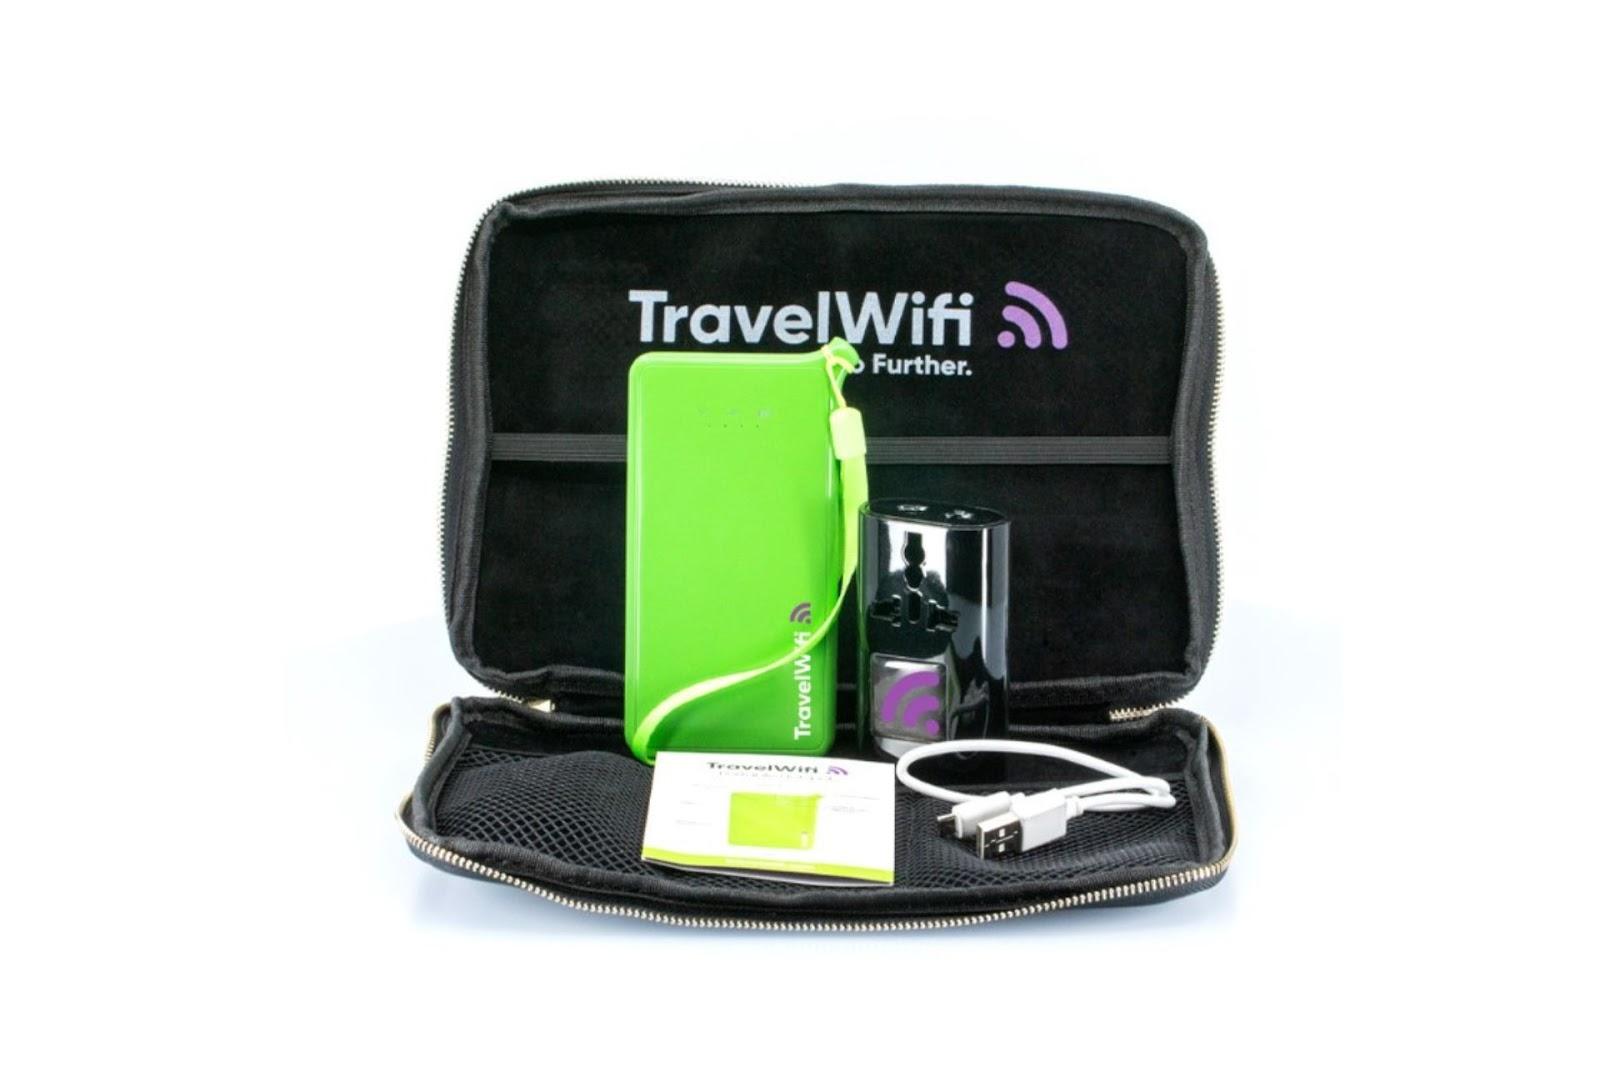 Este es un ejemplo de un kit de viaje para tener internet en europa con un Pocket WiFi